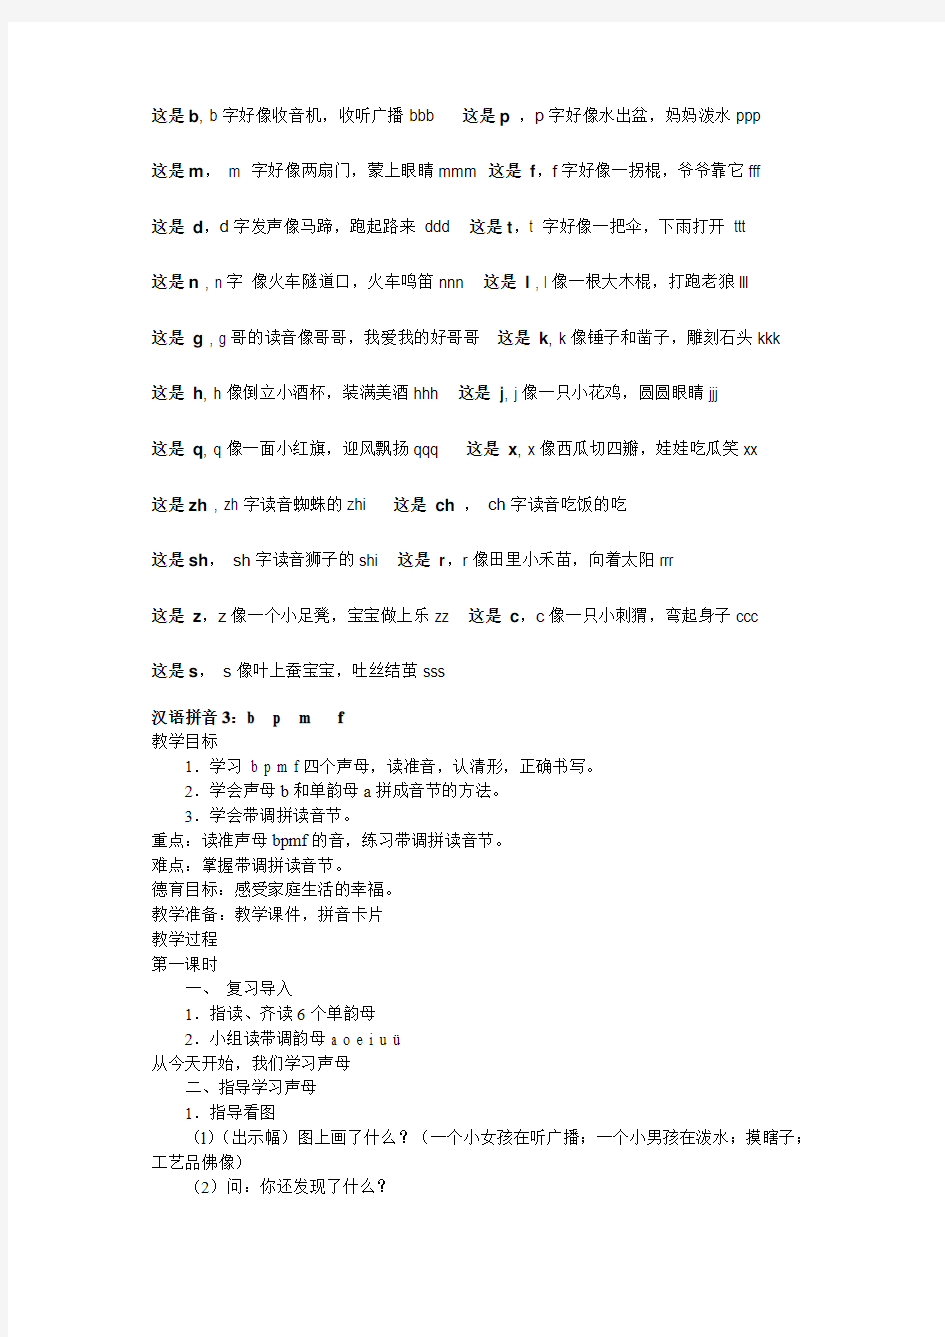 汉语拼音教学方案